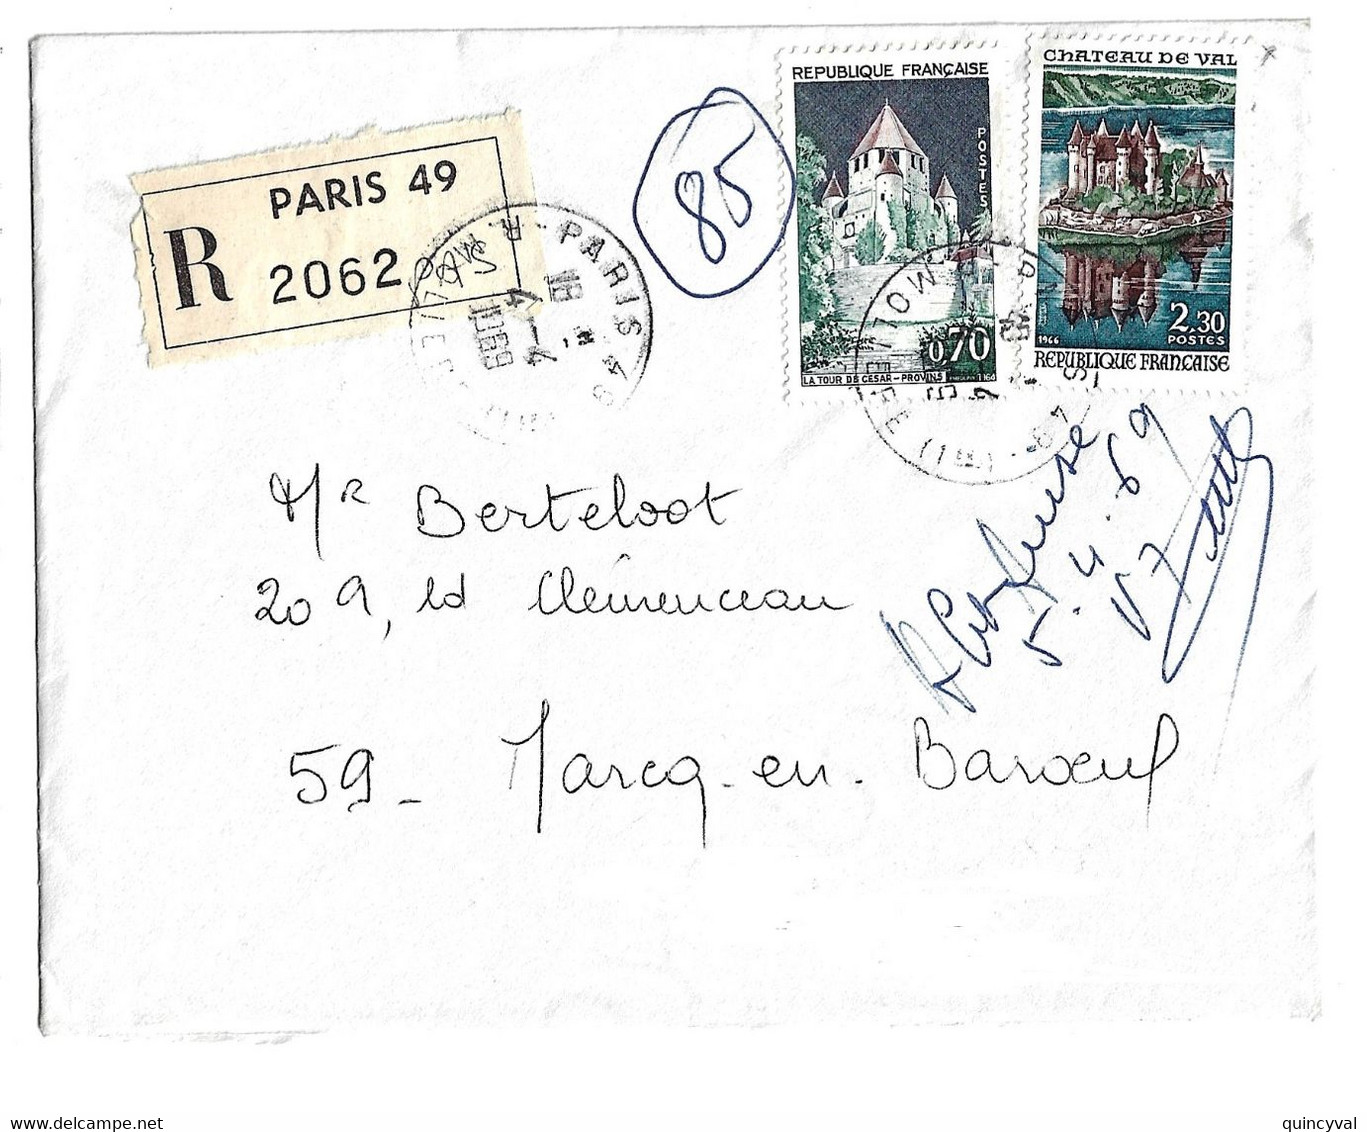 PARIS 48 Lettre Recommandée 70c Provins 2,30 F Château De Val Yv 1426 1540 Ob 4 4 1969 Etiquette Reco - Storia Postale